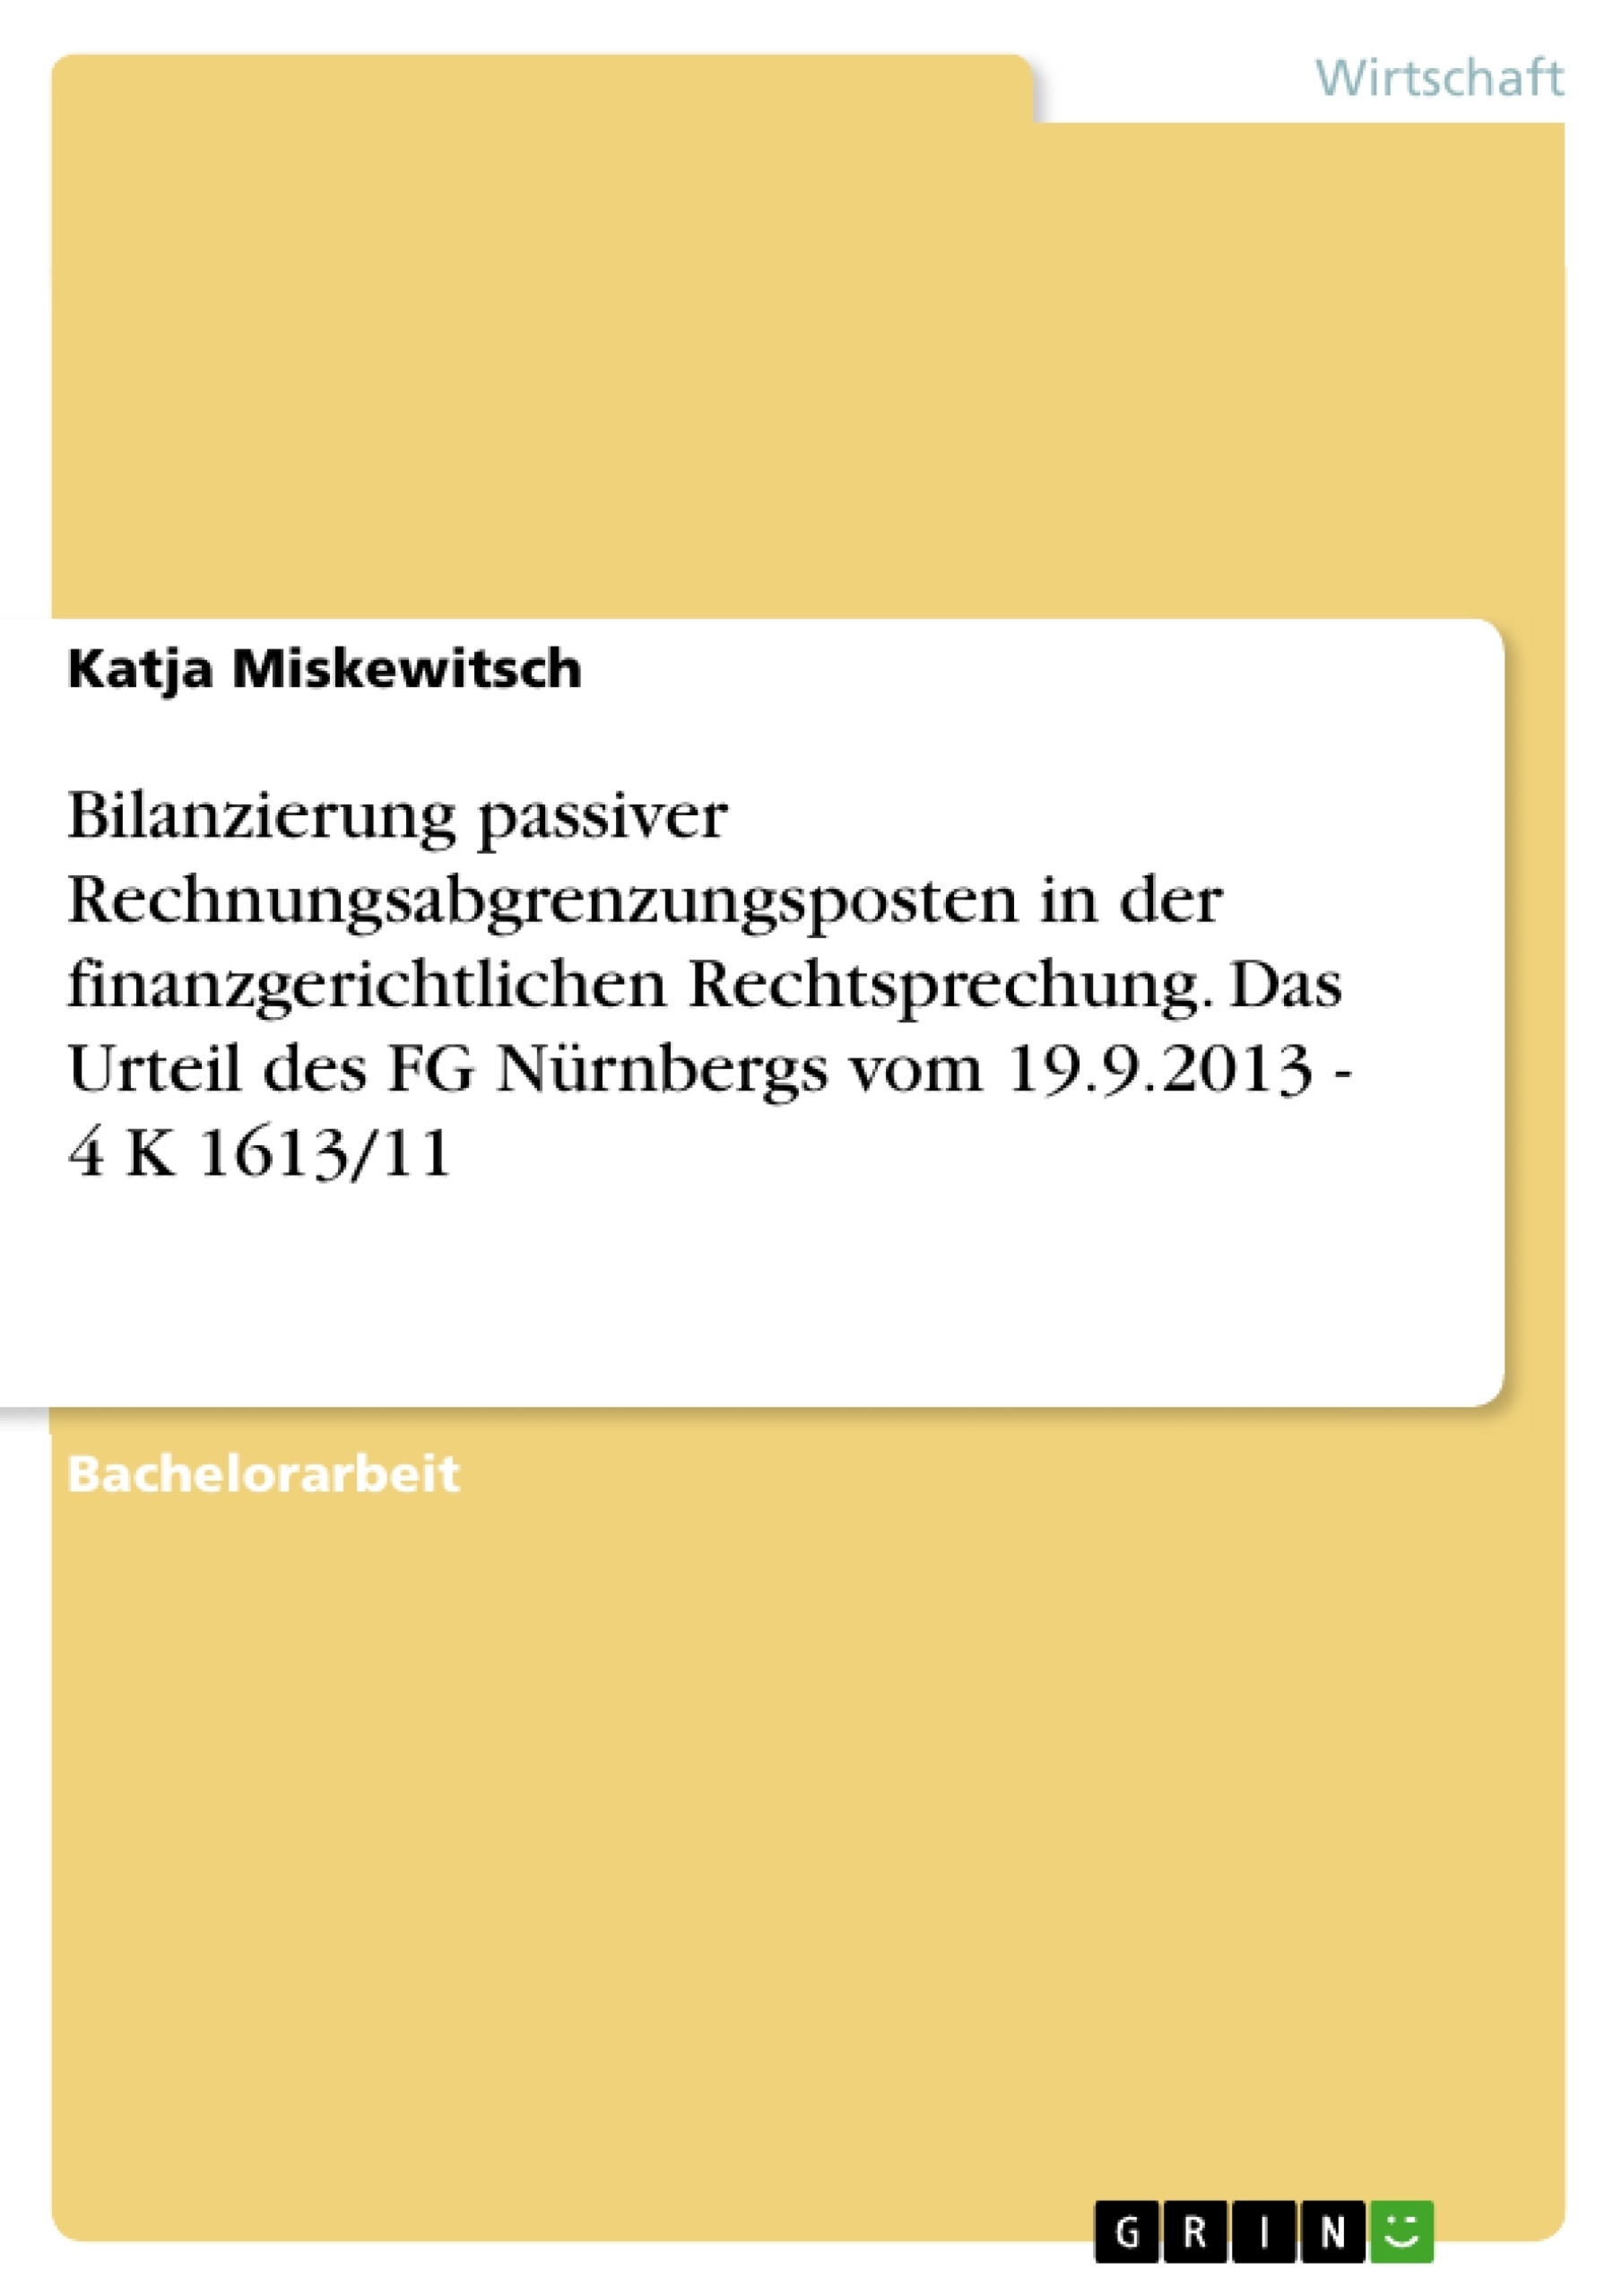 Titre: Bilanzierung passiver Rechnungsabgrenzungsposten in der finanzgerichtlichen Rechtsprechung. Das Urteil des FG Nürnbergs vom 19.9.2013 - 4 K 1613/11